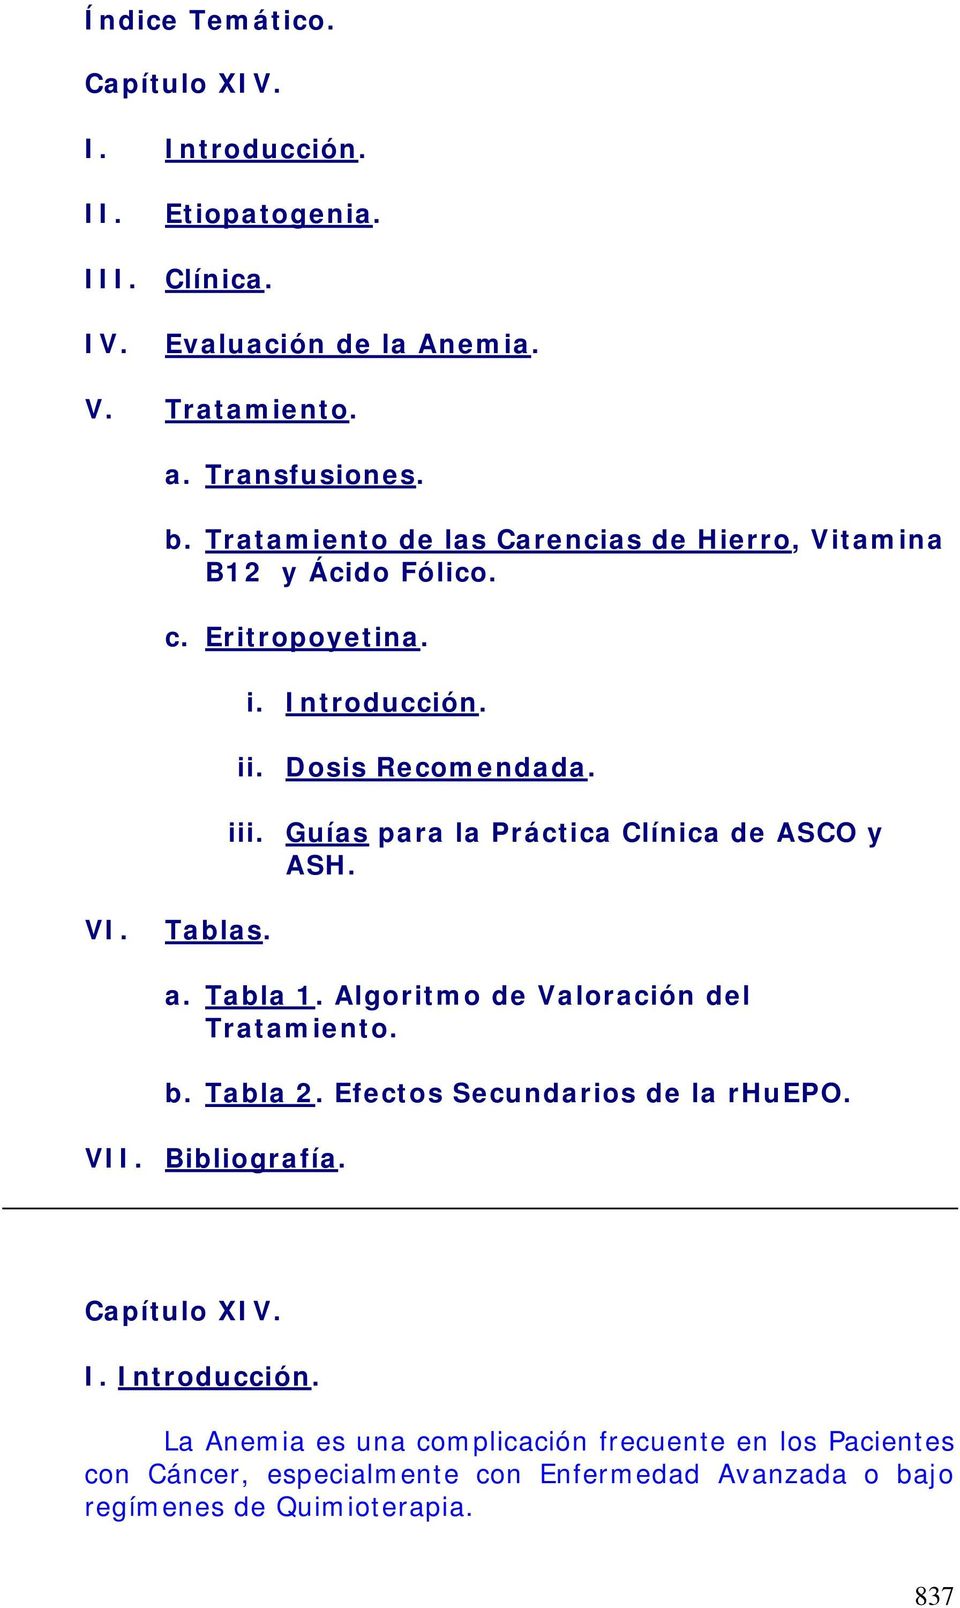 Guías para la Práctica Clínica de ASCO y ASH. VI. Tablas. a. Tabla 1. Algoritmo de Valoración del Tratamiento. b. Tabla 2. Efectos Secundarios de la rhuepo.